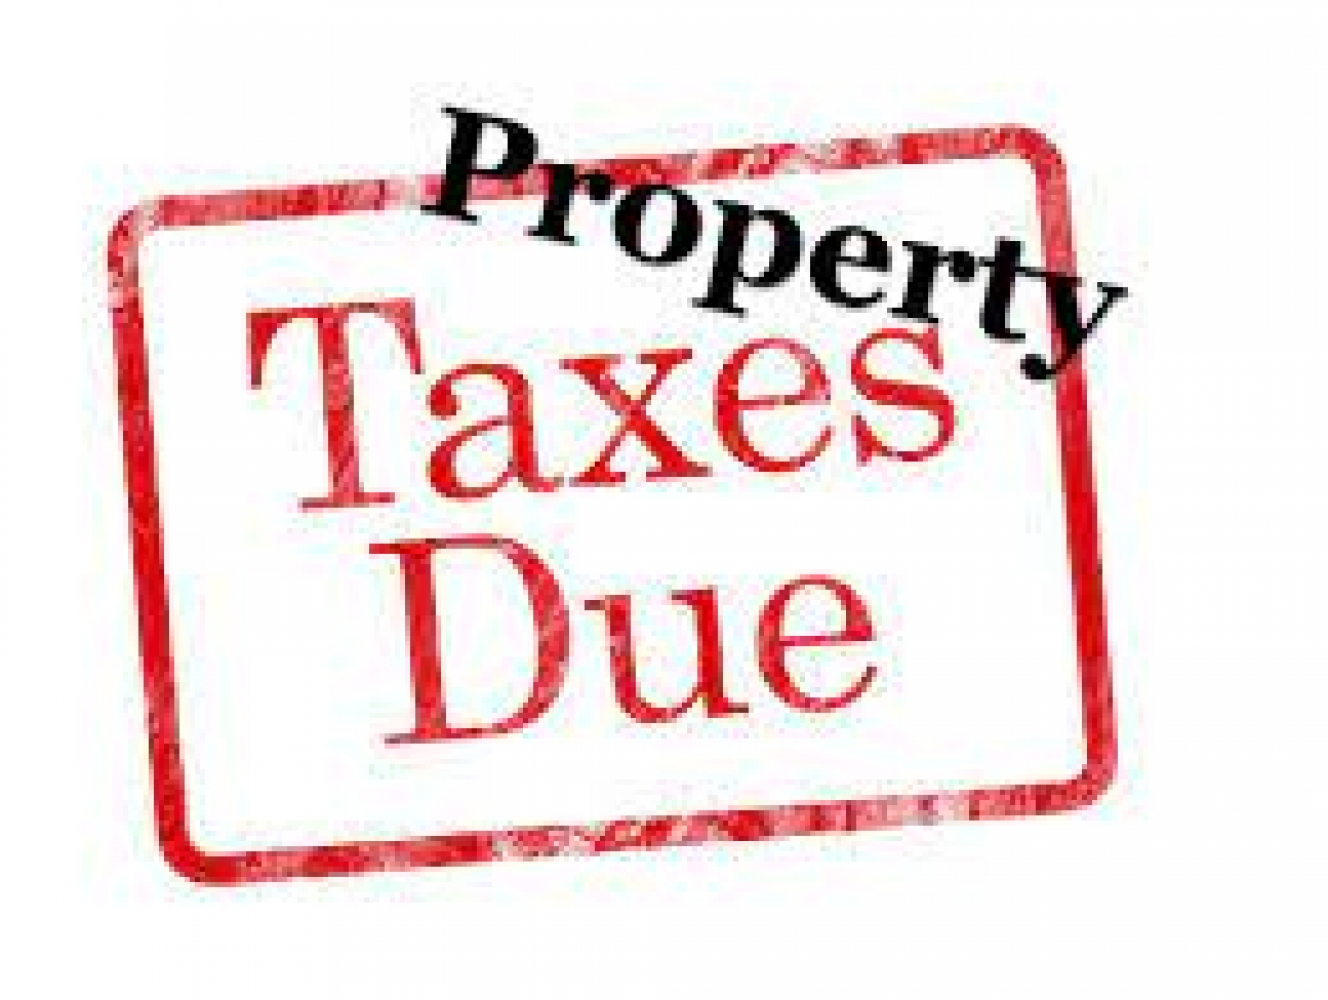 Taxes Due December 31